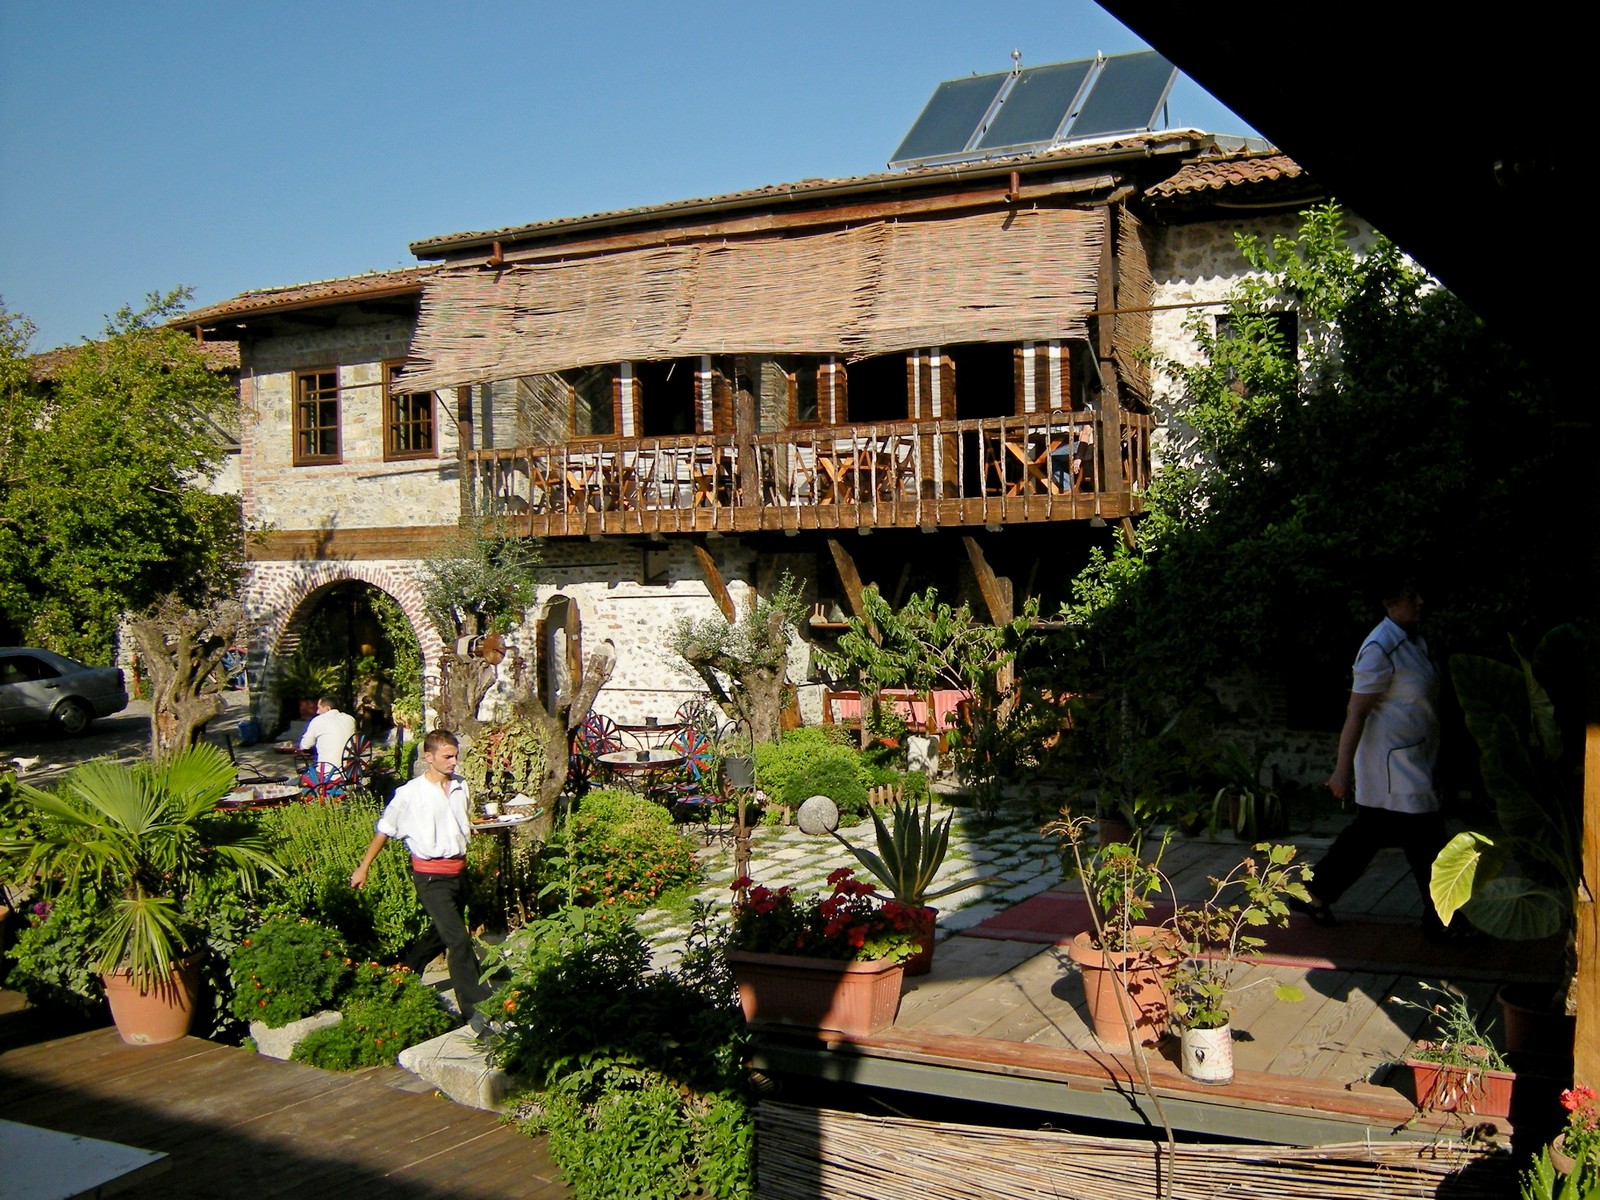 Gemtlicher Innenhof des Hotels Tradita in Shkodra - Lupe Reisen